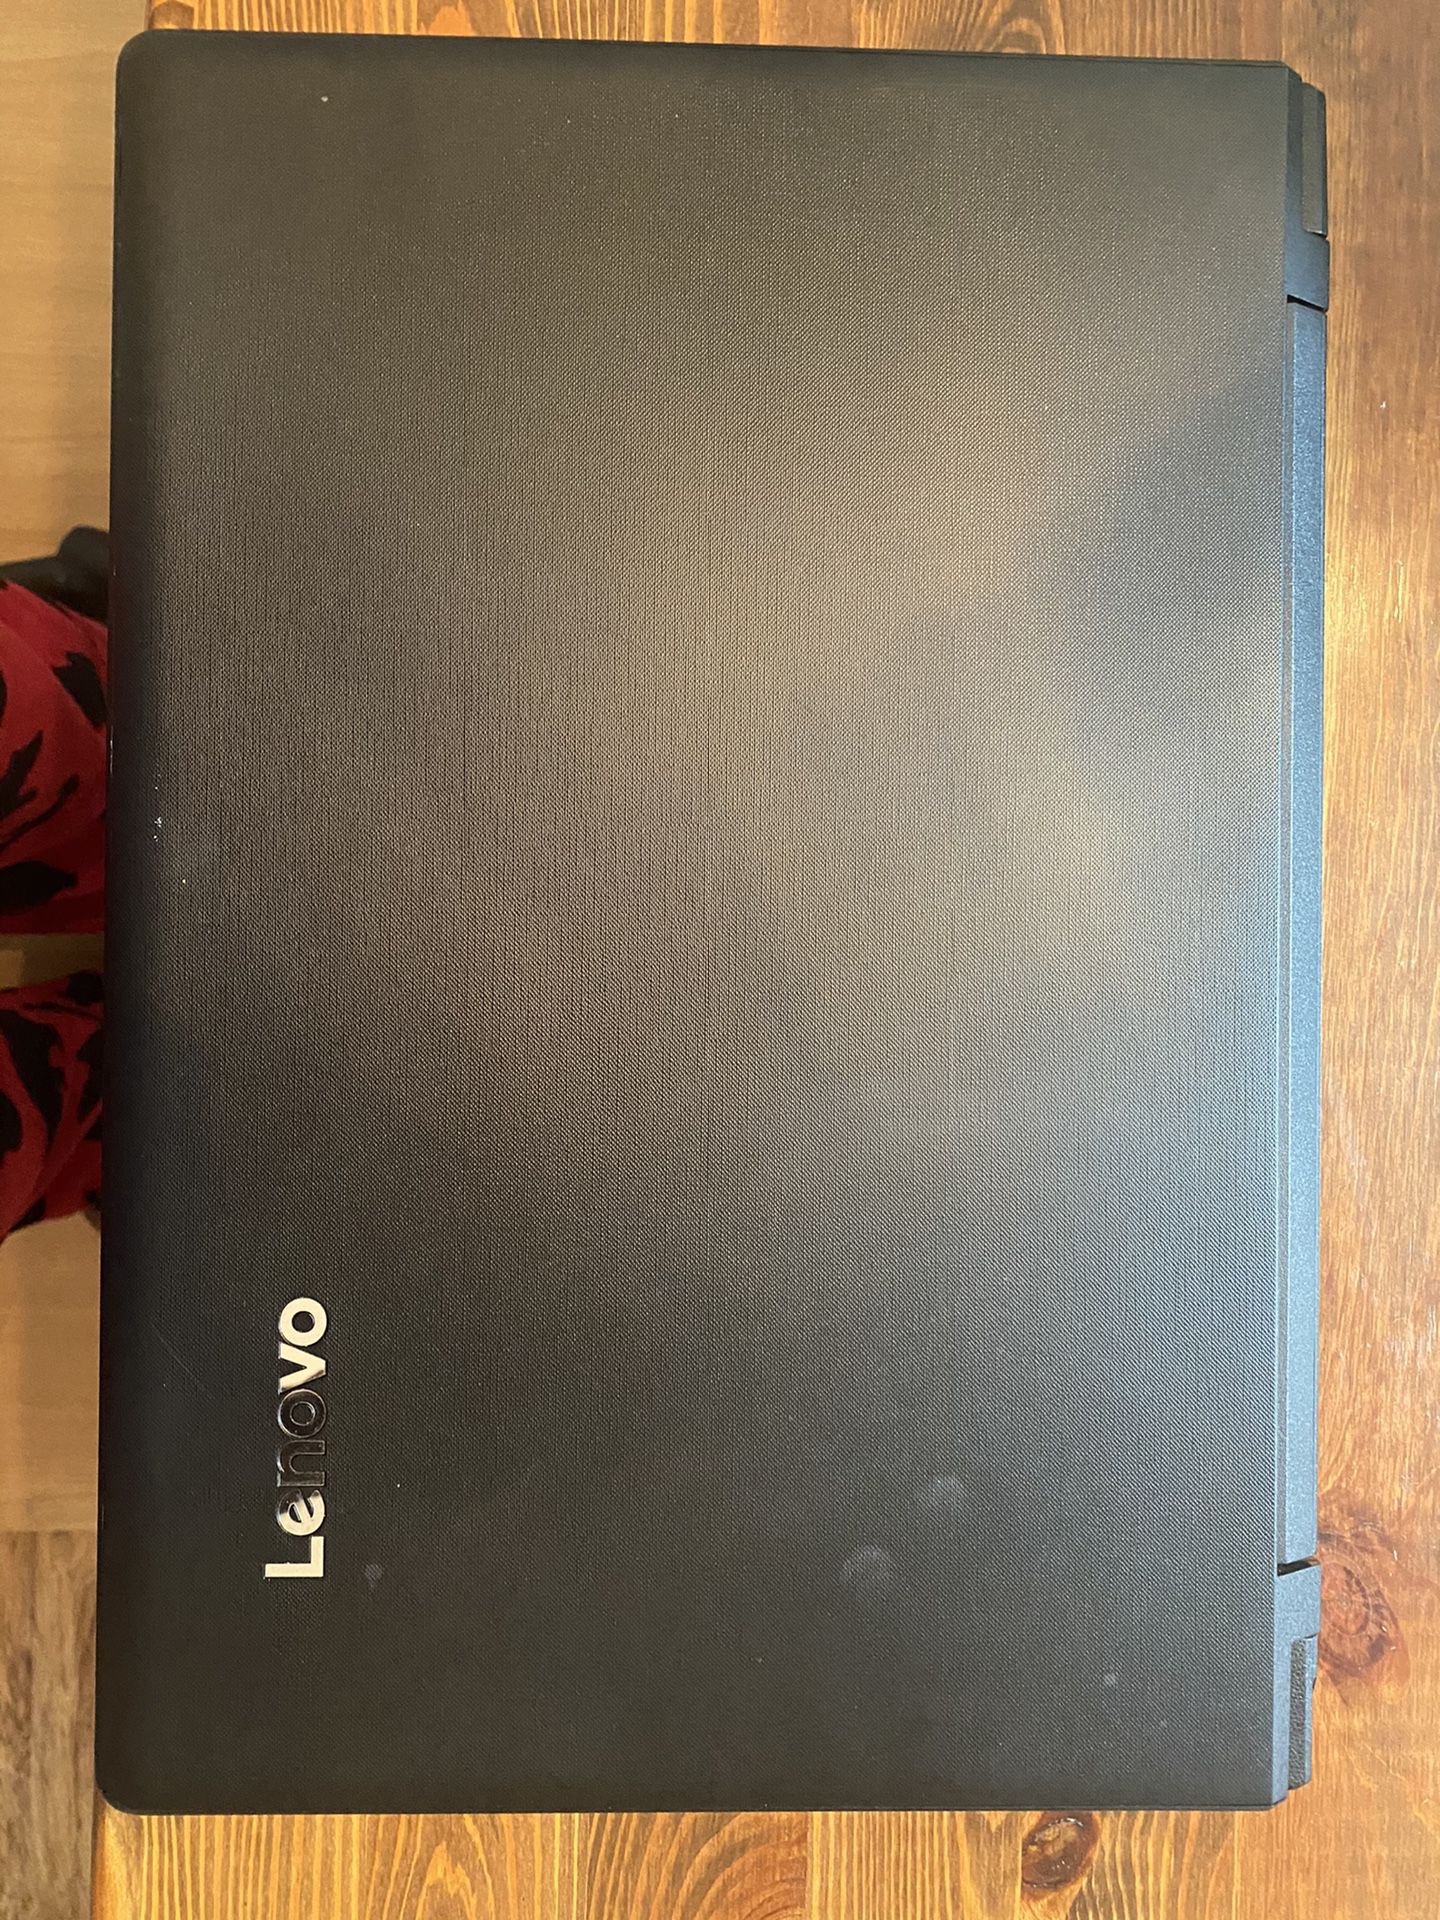 Lenovo , Intel Core i3 Laptop 64-bit